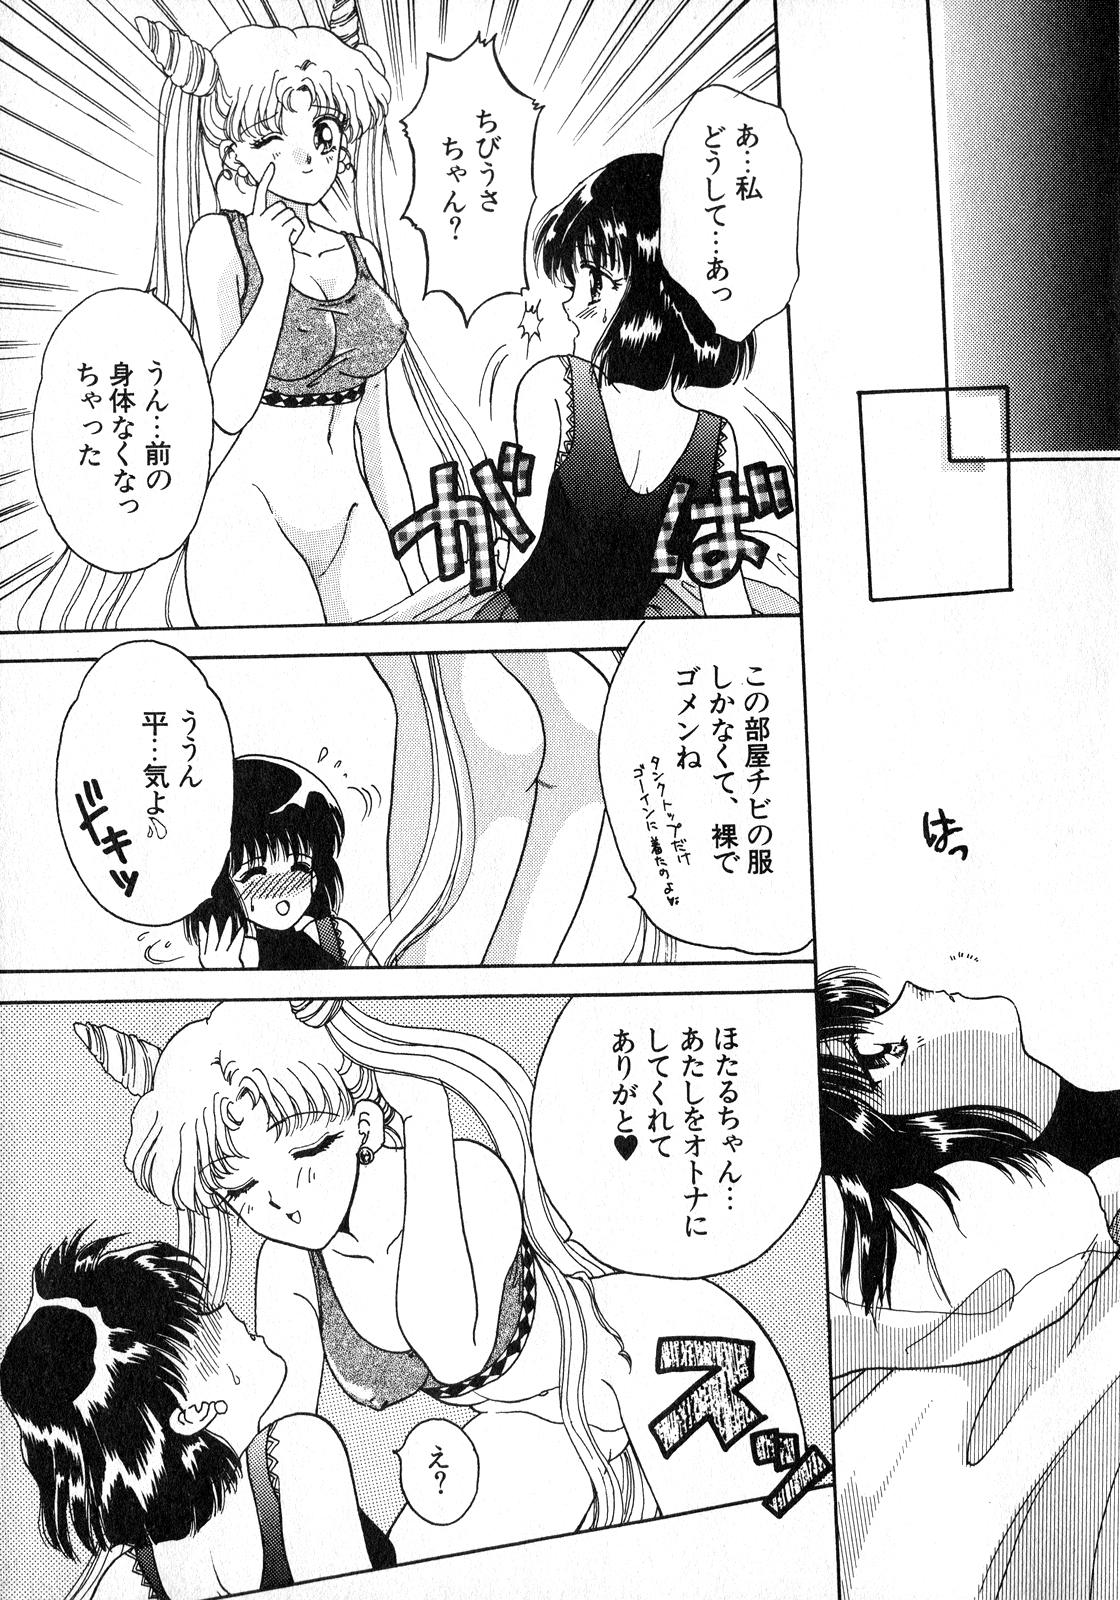 Blow Job Lunatic Party 8 - Sailor moon Cam Porn - Page 12